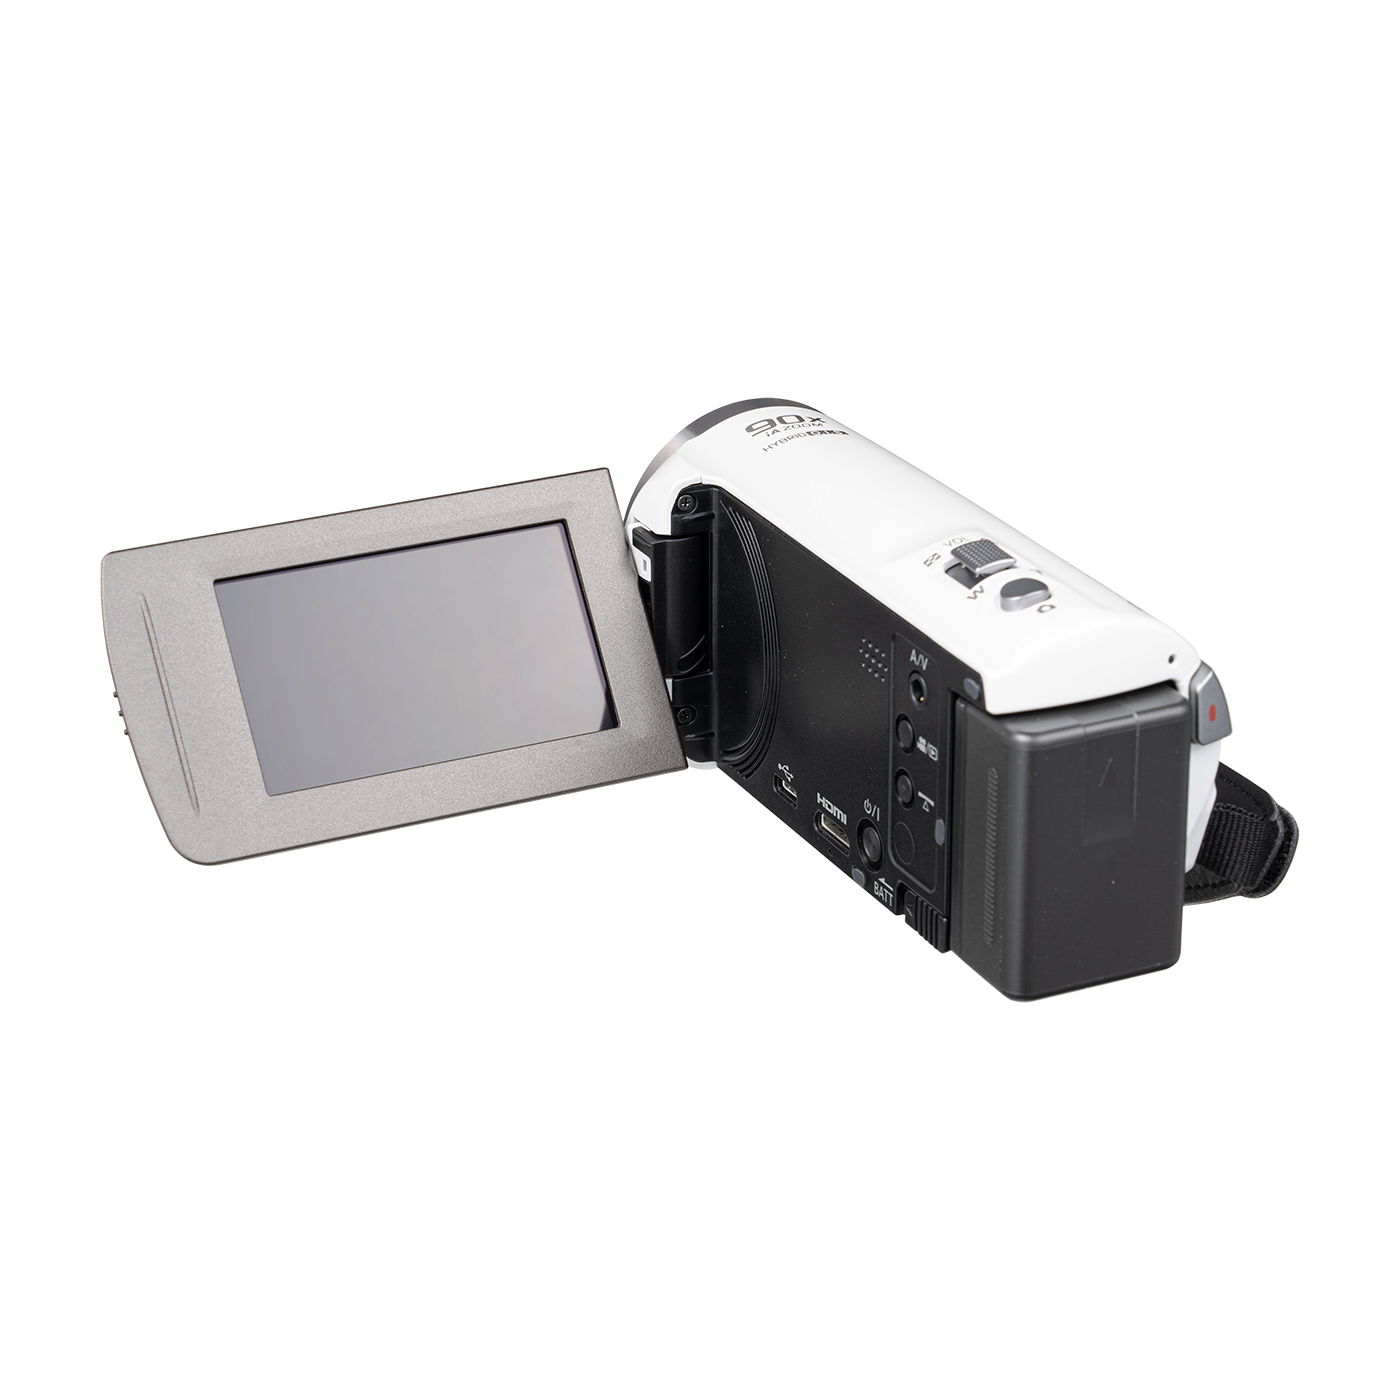 ビデオカメラ HC-V480MSハイビジョン